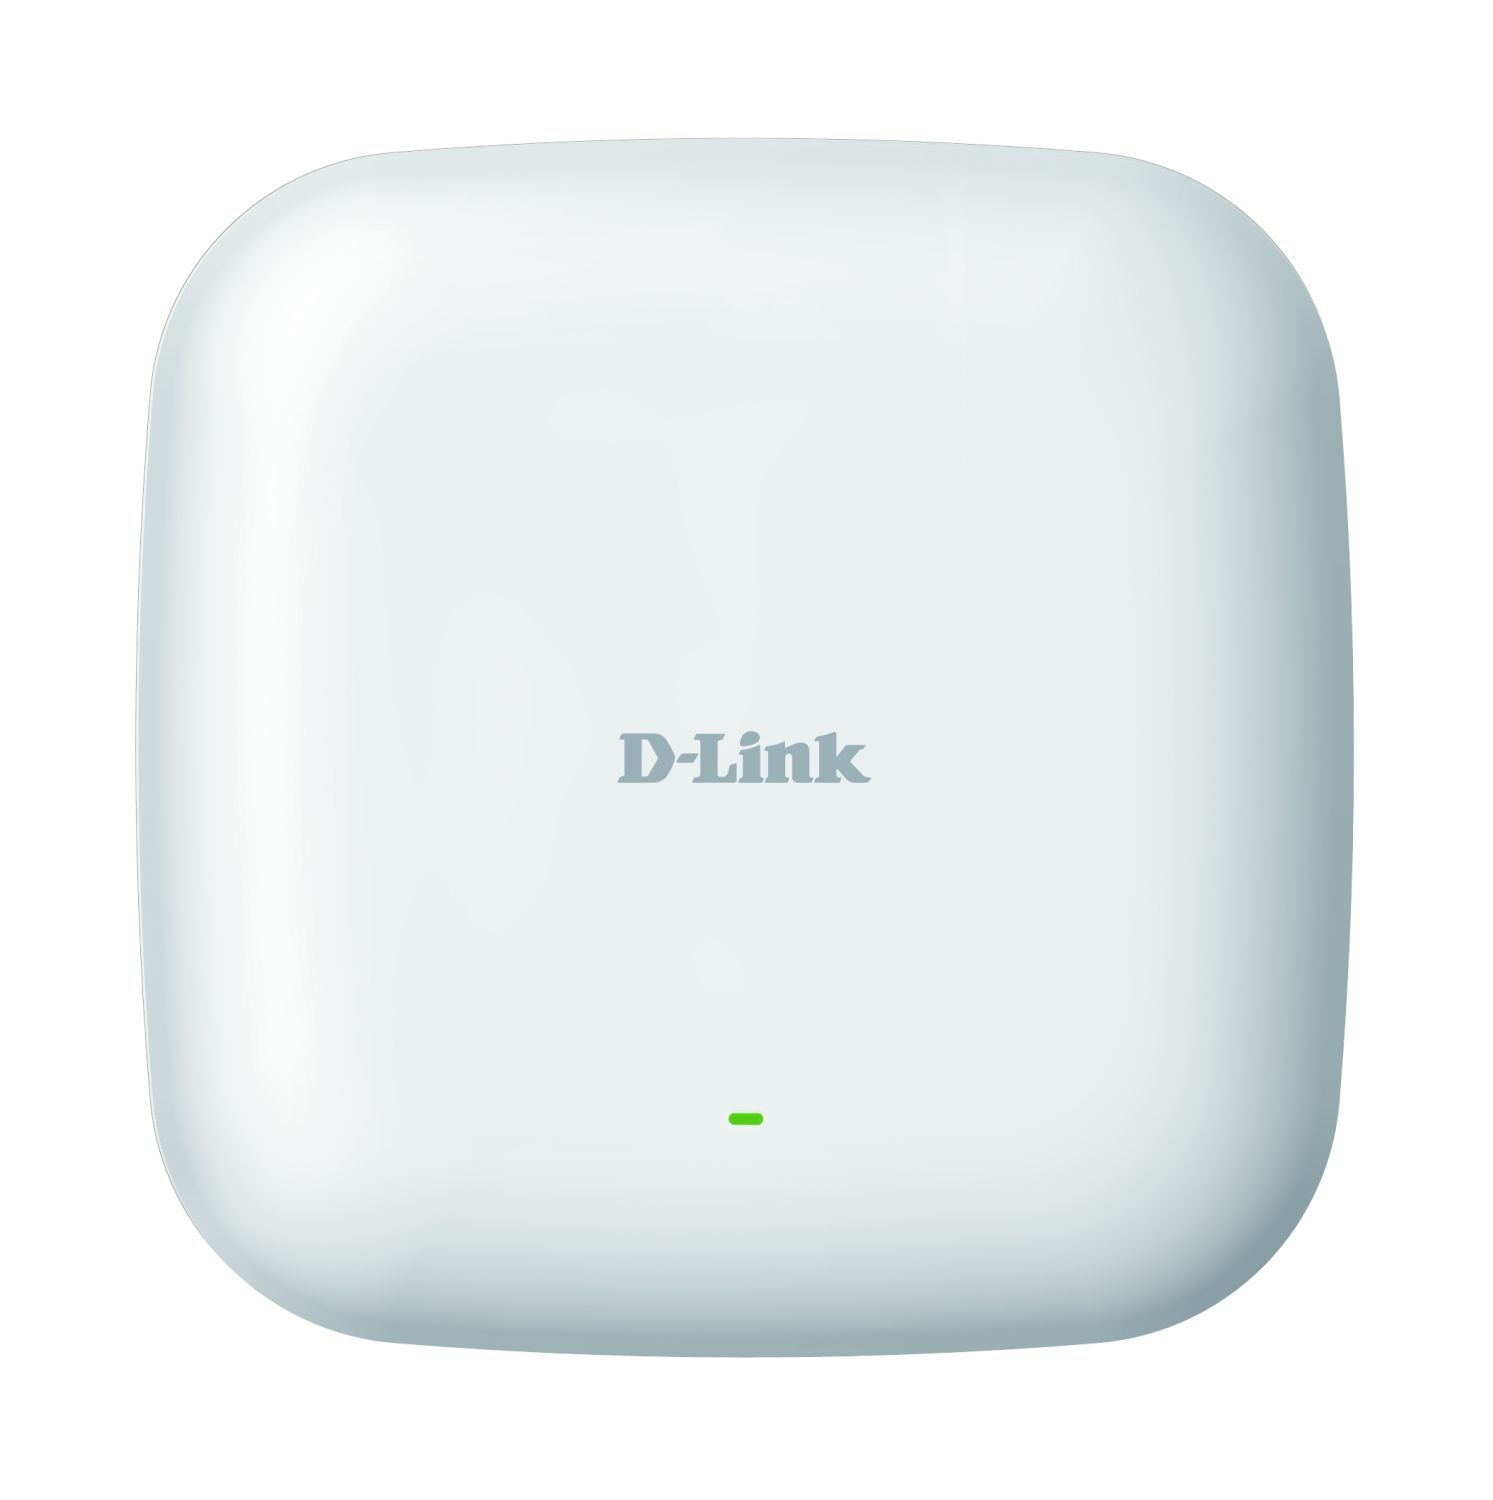 DLink Deutschland Wireless Access Point Wave2 Parallel-Band DAP-2610